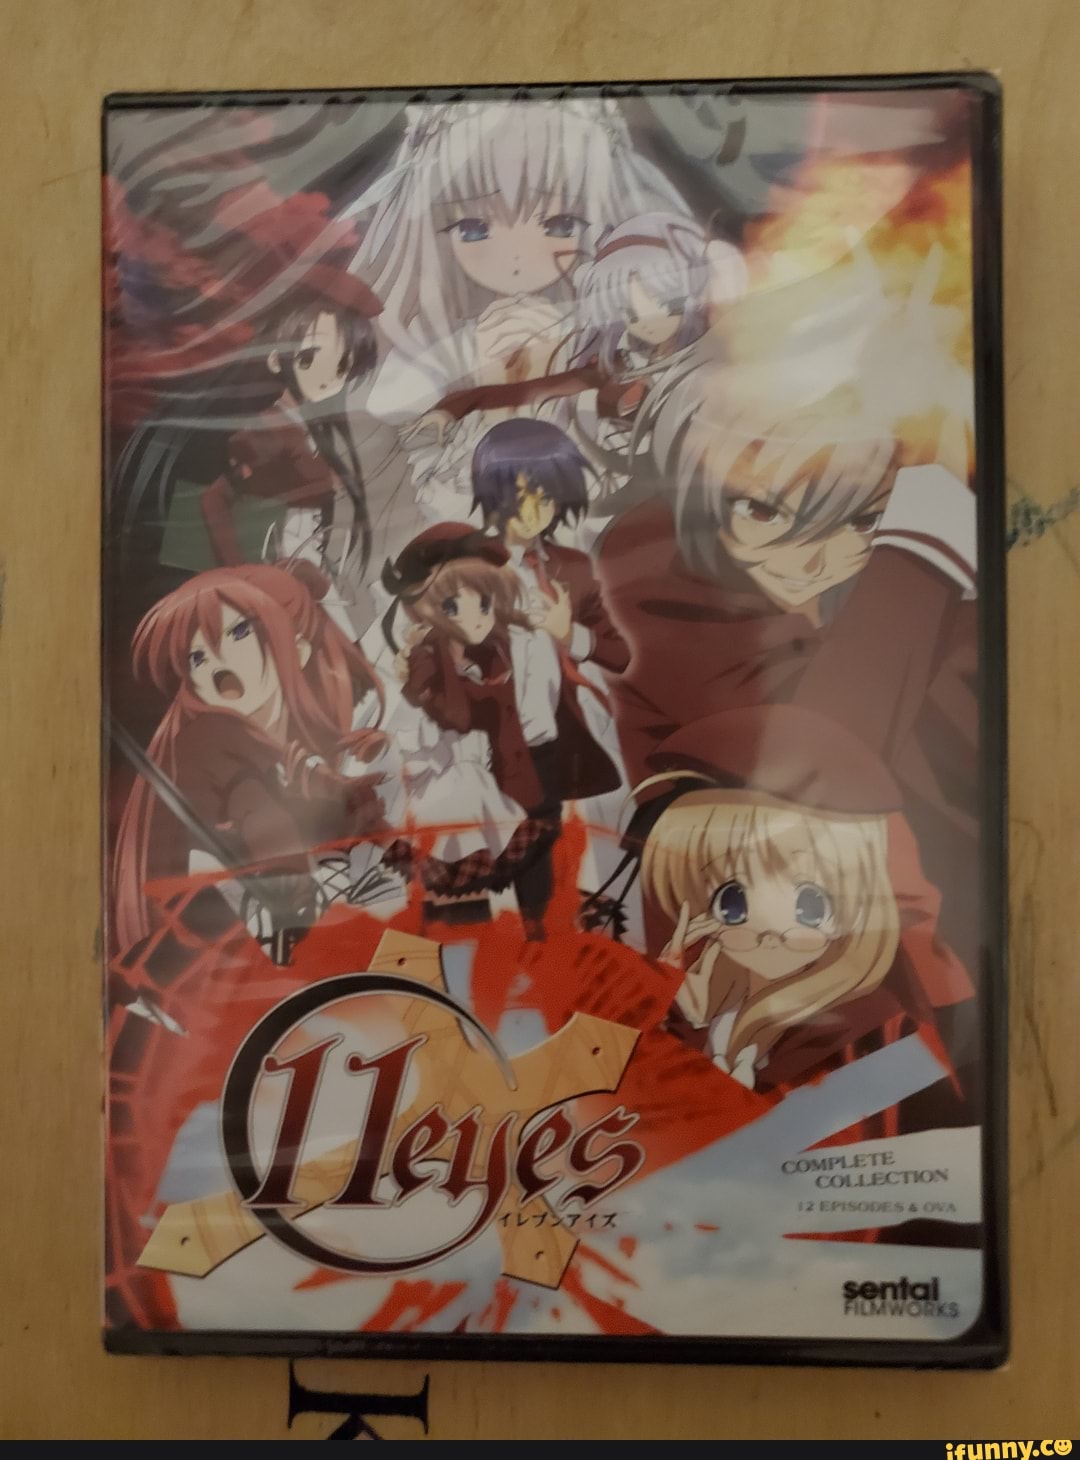 Anime Like 11eyes OVA